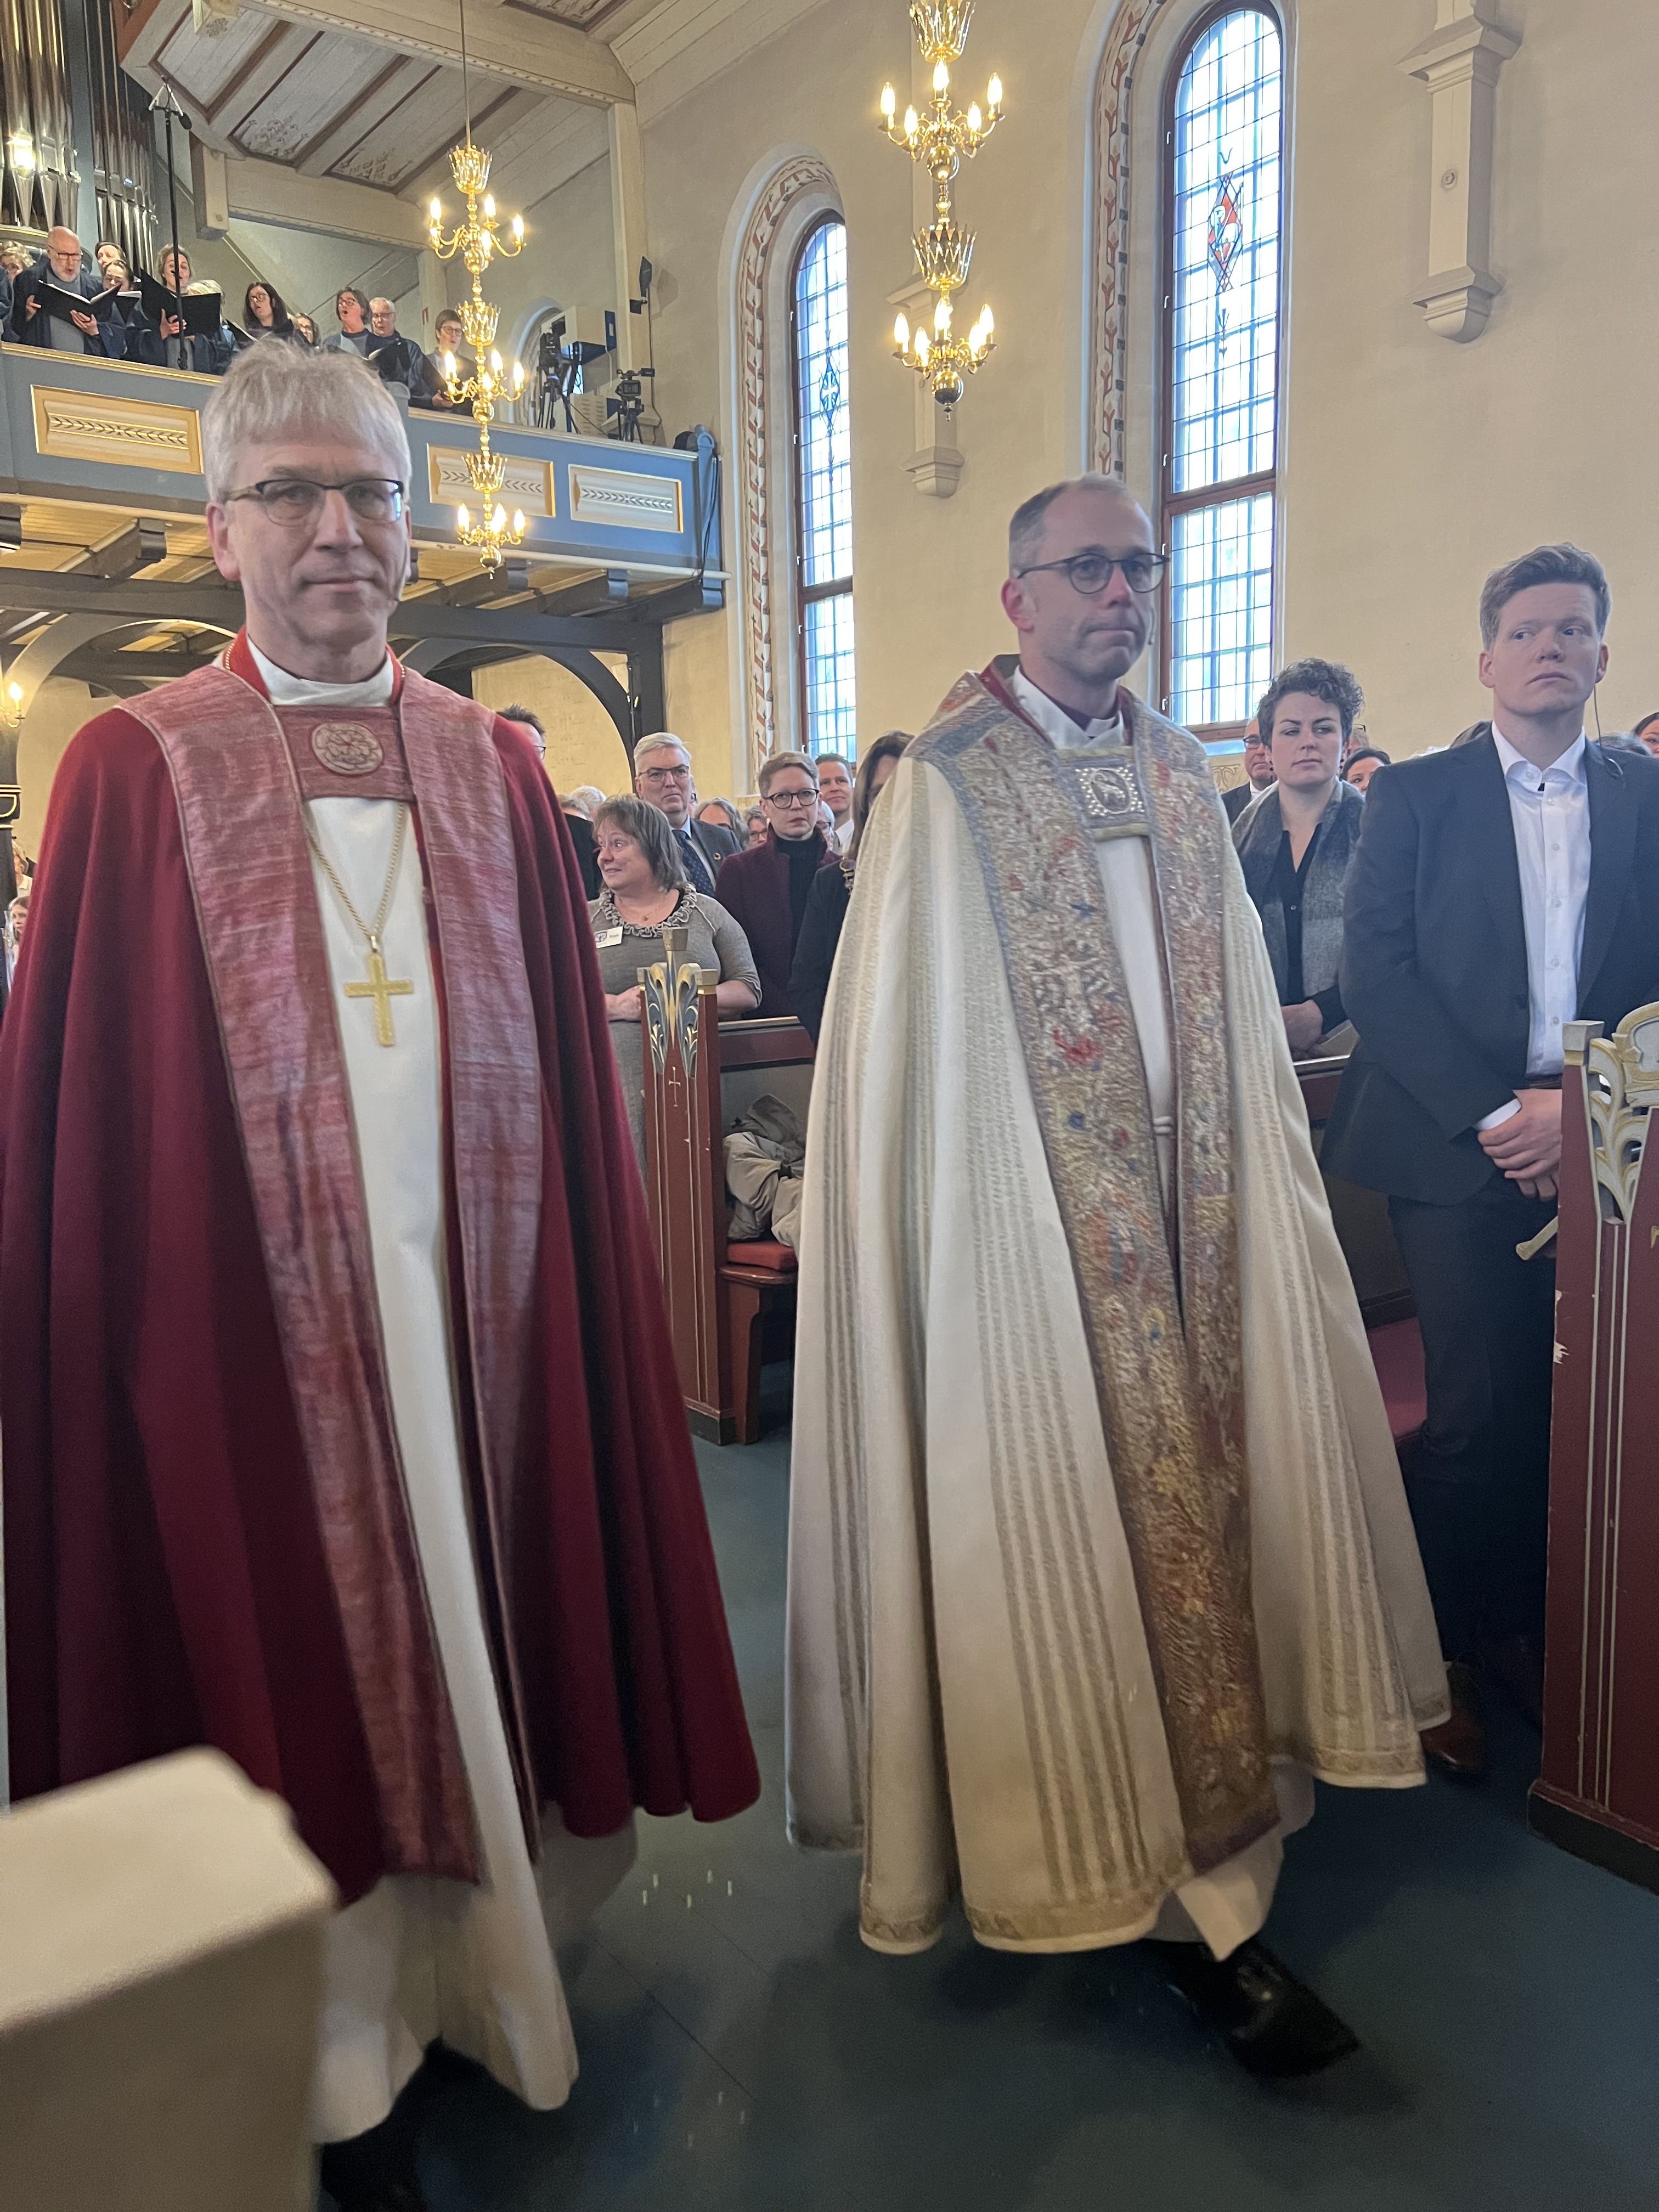 Preses Olav Fykse Tveit følger Ole Kristian Bonden inn til gudstjenesten der Bonden skal innsettes som biskop. Foto: Hamar bispedømme